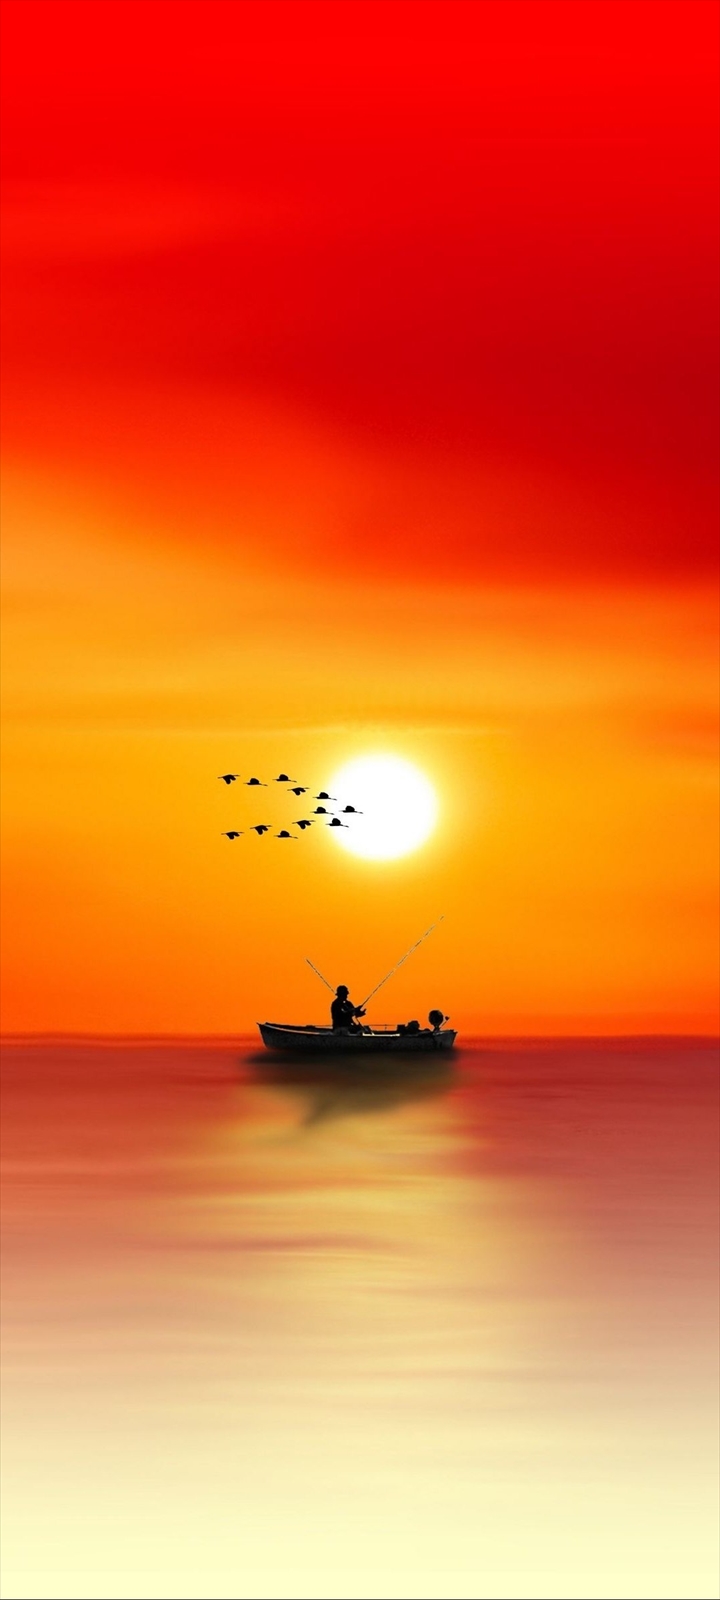 ボートで釣りをする人と渡り鳥と夕日 Galaxy A32 5g 壁紙 待ち受け スマラン